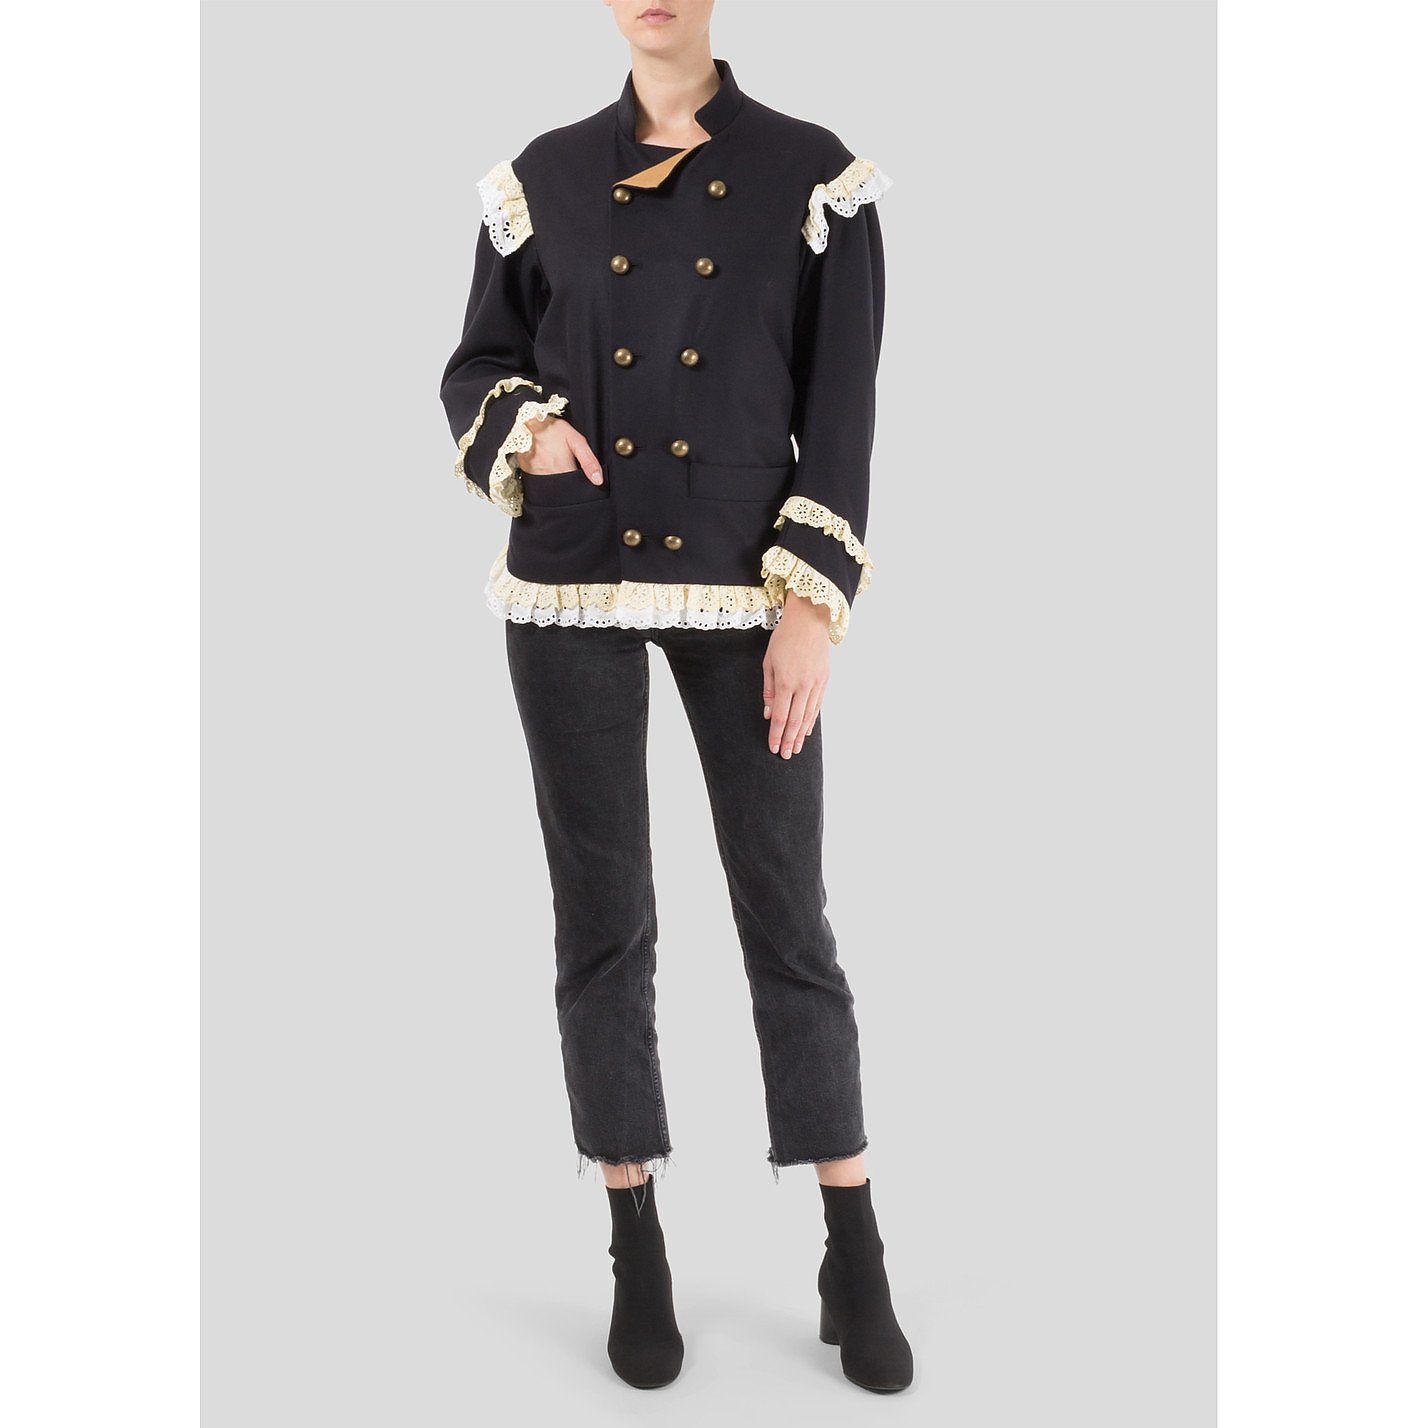 Vivienne Westwood Pirate Jacket